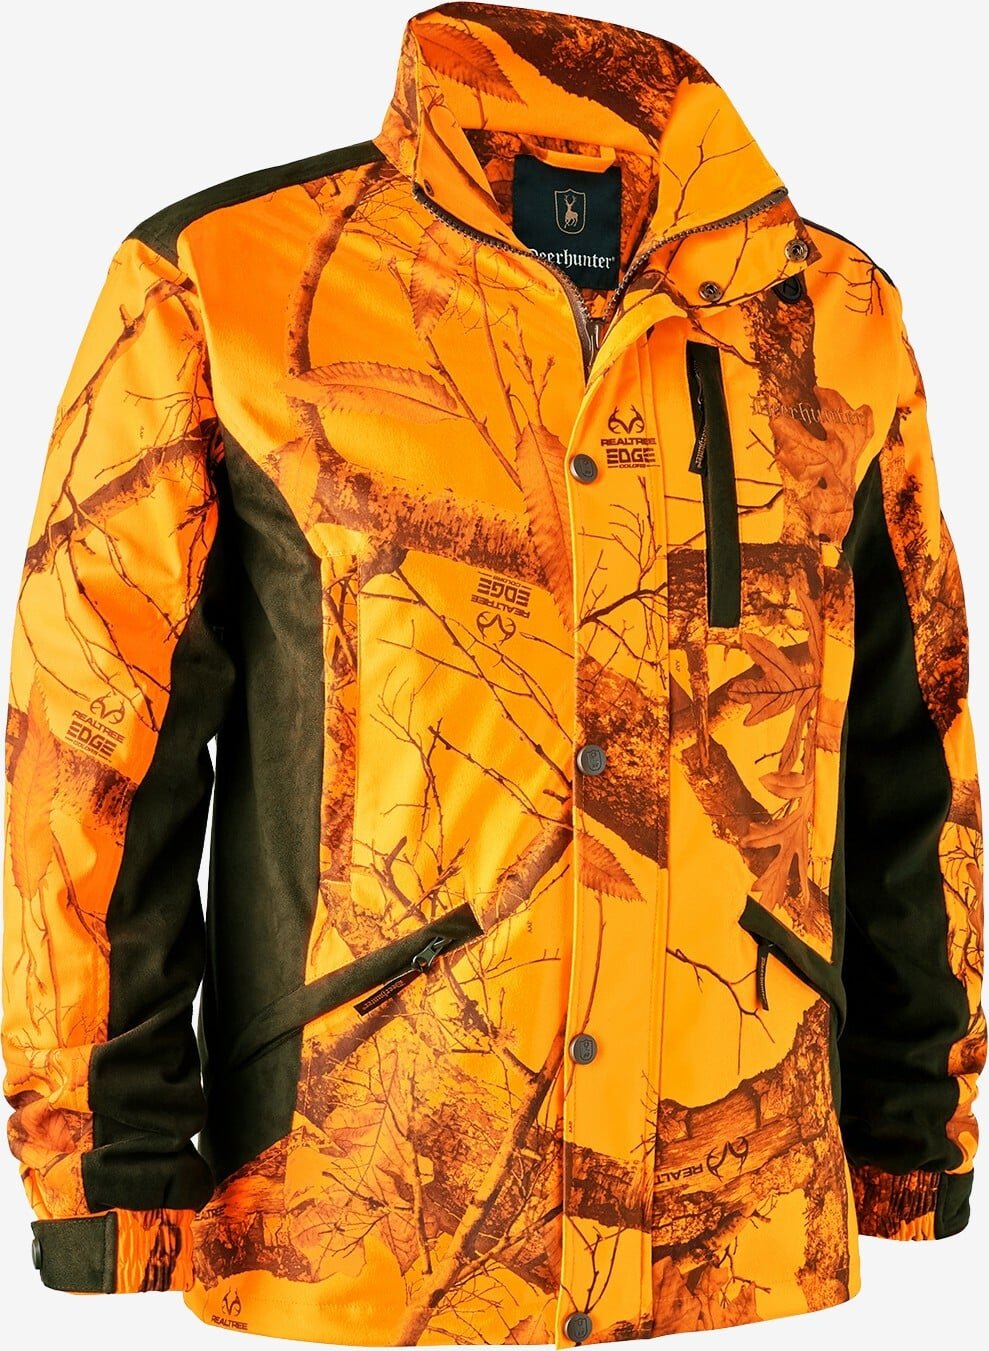 Billede af Deerhunter - Explore jakke (REALTREE EDGE ® Orange) - 56 (XL) hos Friluft.dk